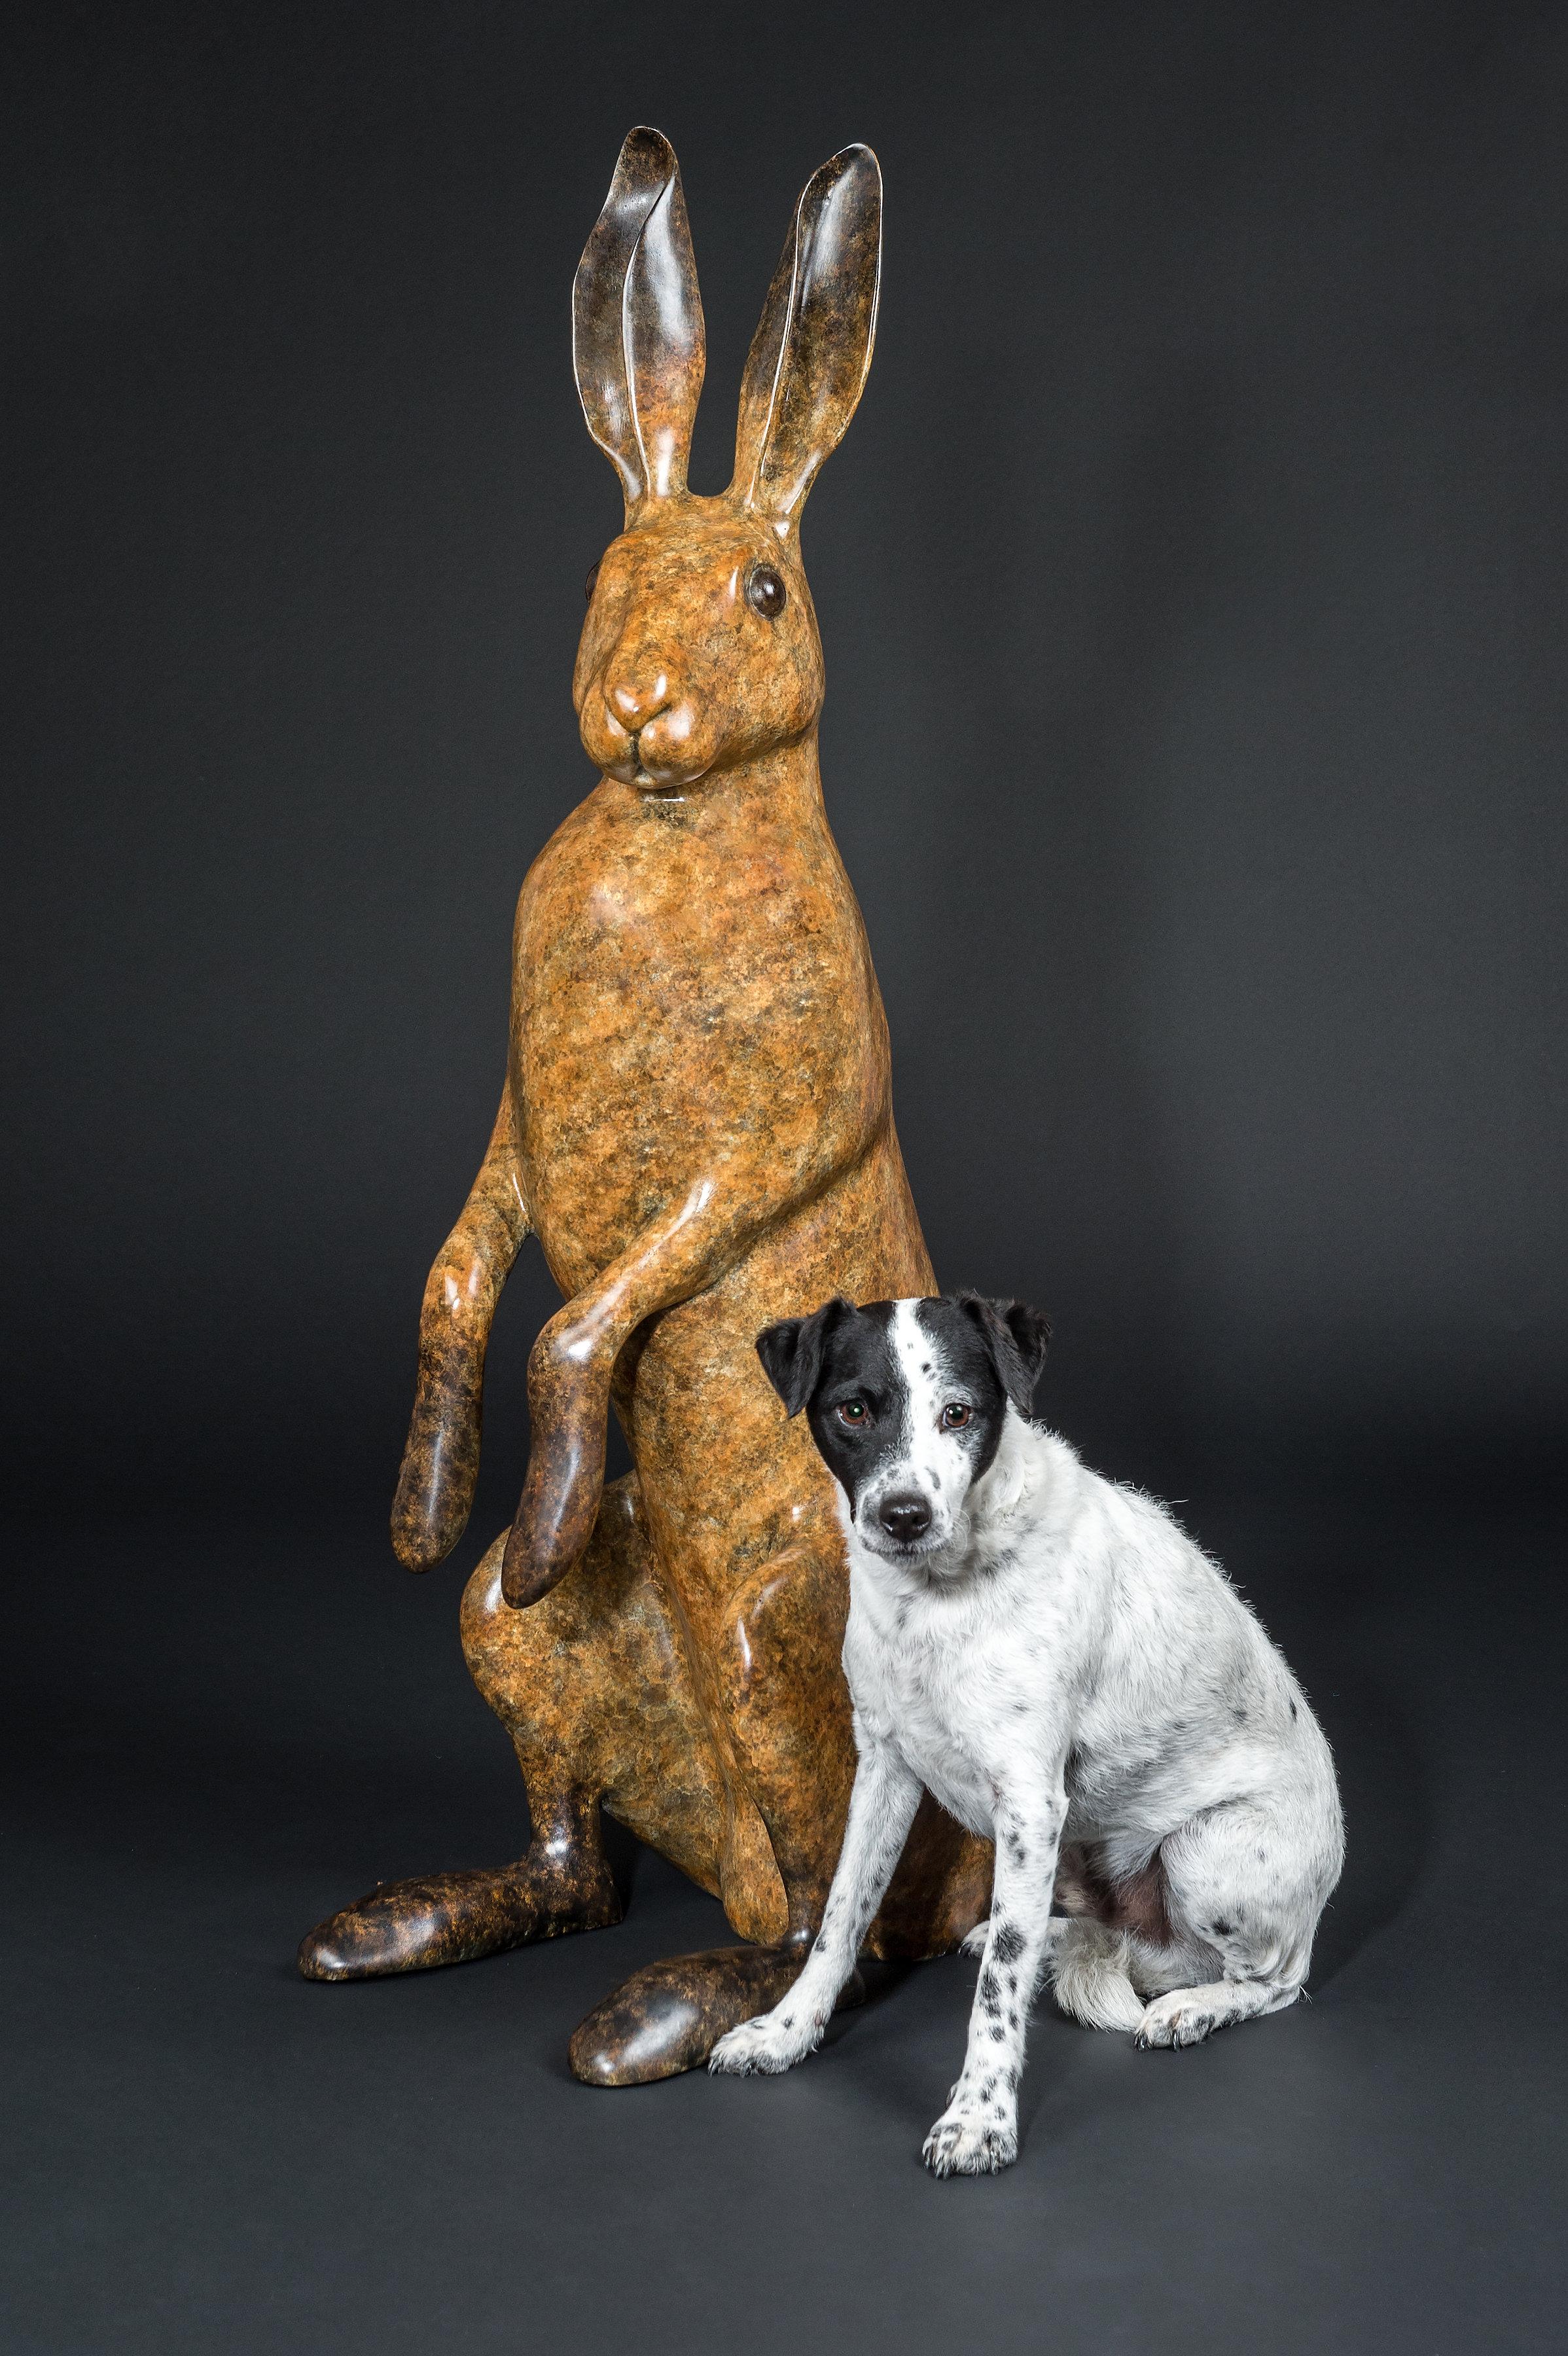 Zeitgenössische Bronze-Gartenskulptur „Majestic Hare“ eines Kaninchens/Hauses (Gold), Figurative Sculpture, von Richard Smith b.1955